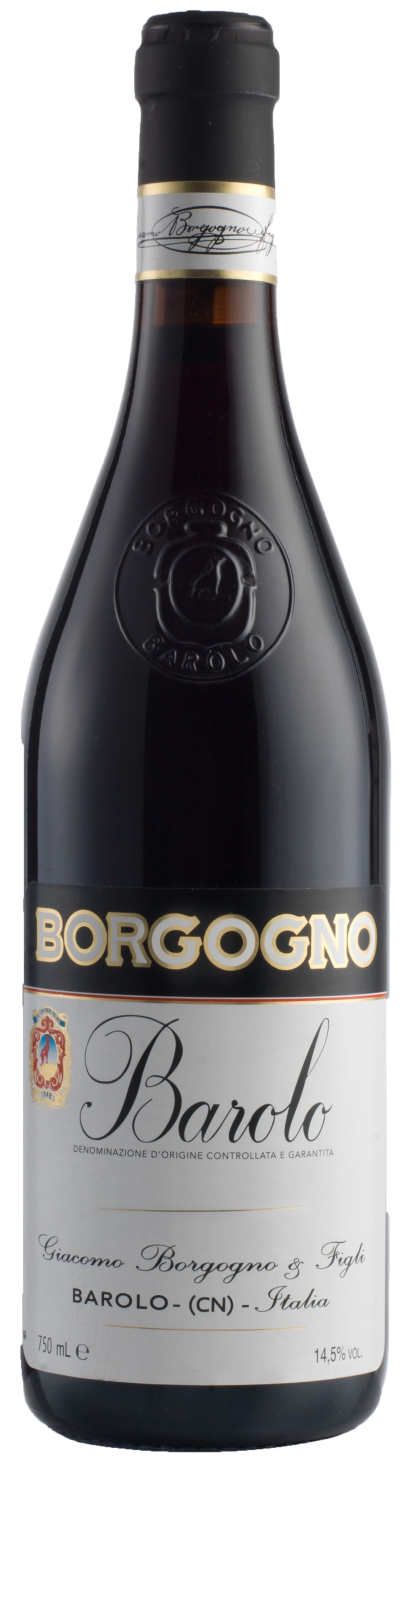 packshot Borgogno Barolo DOCG